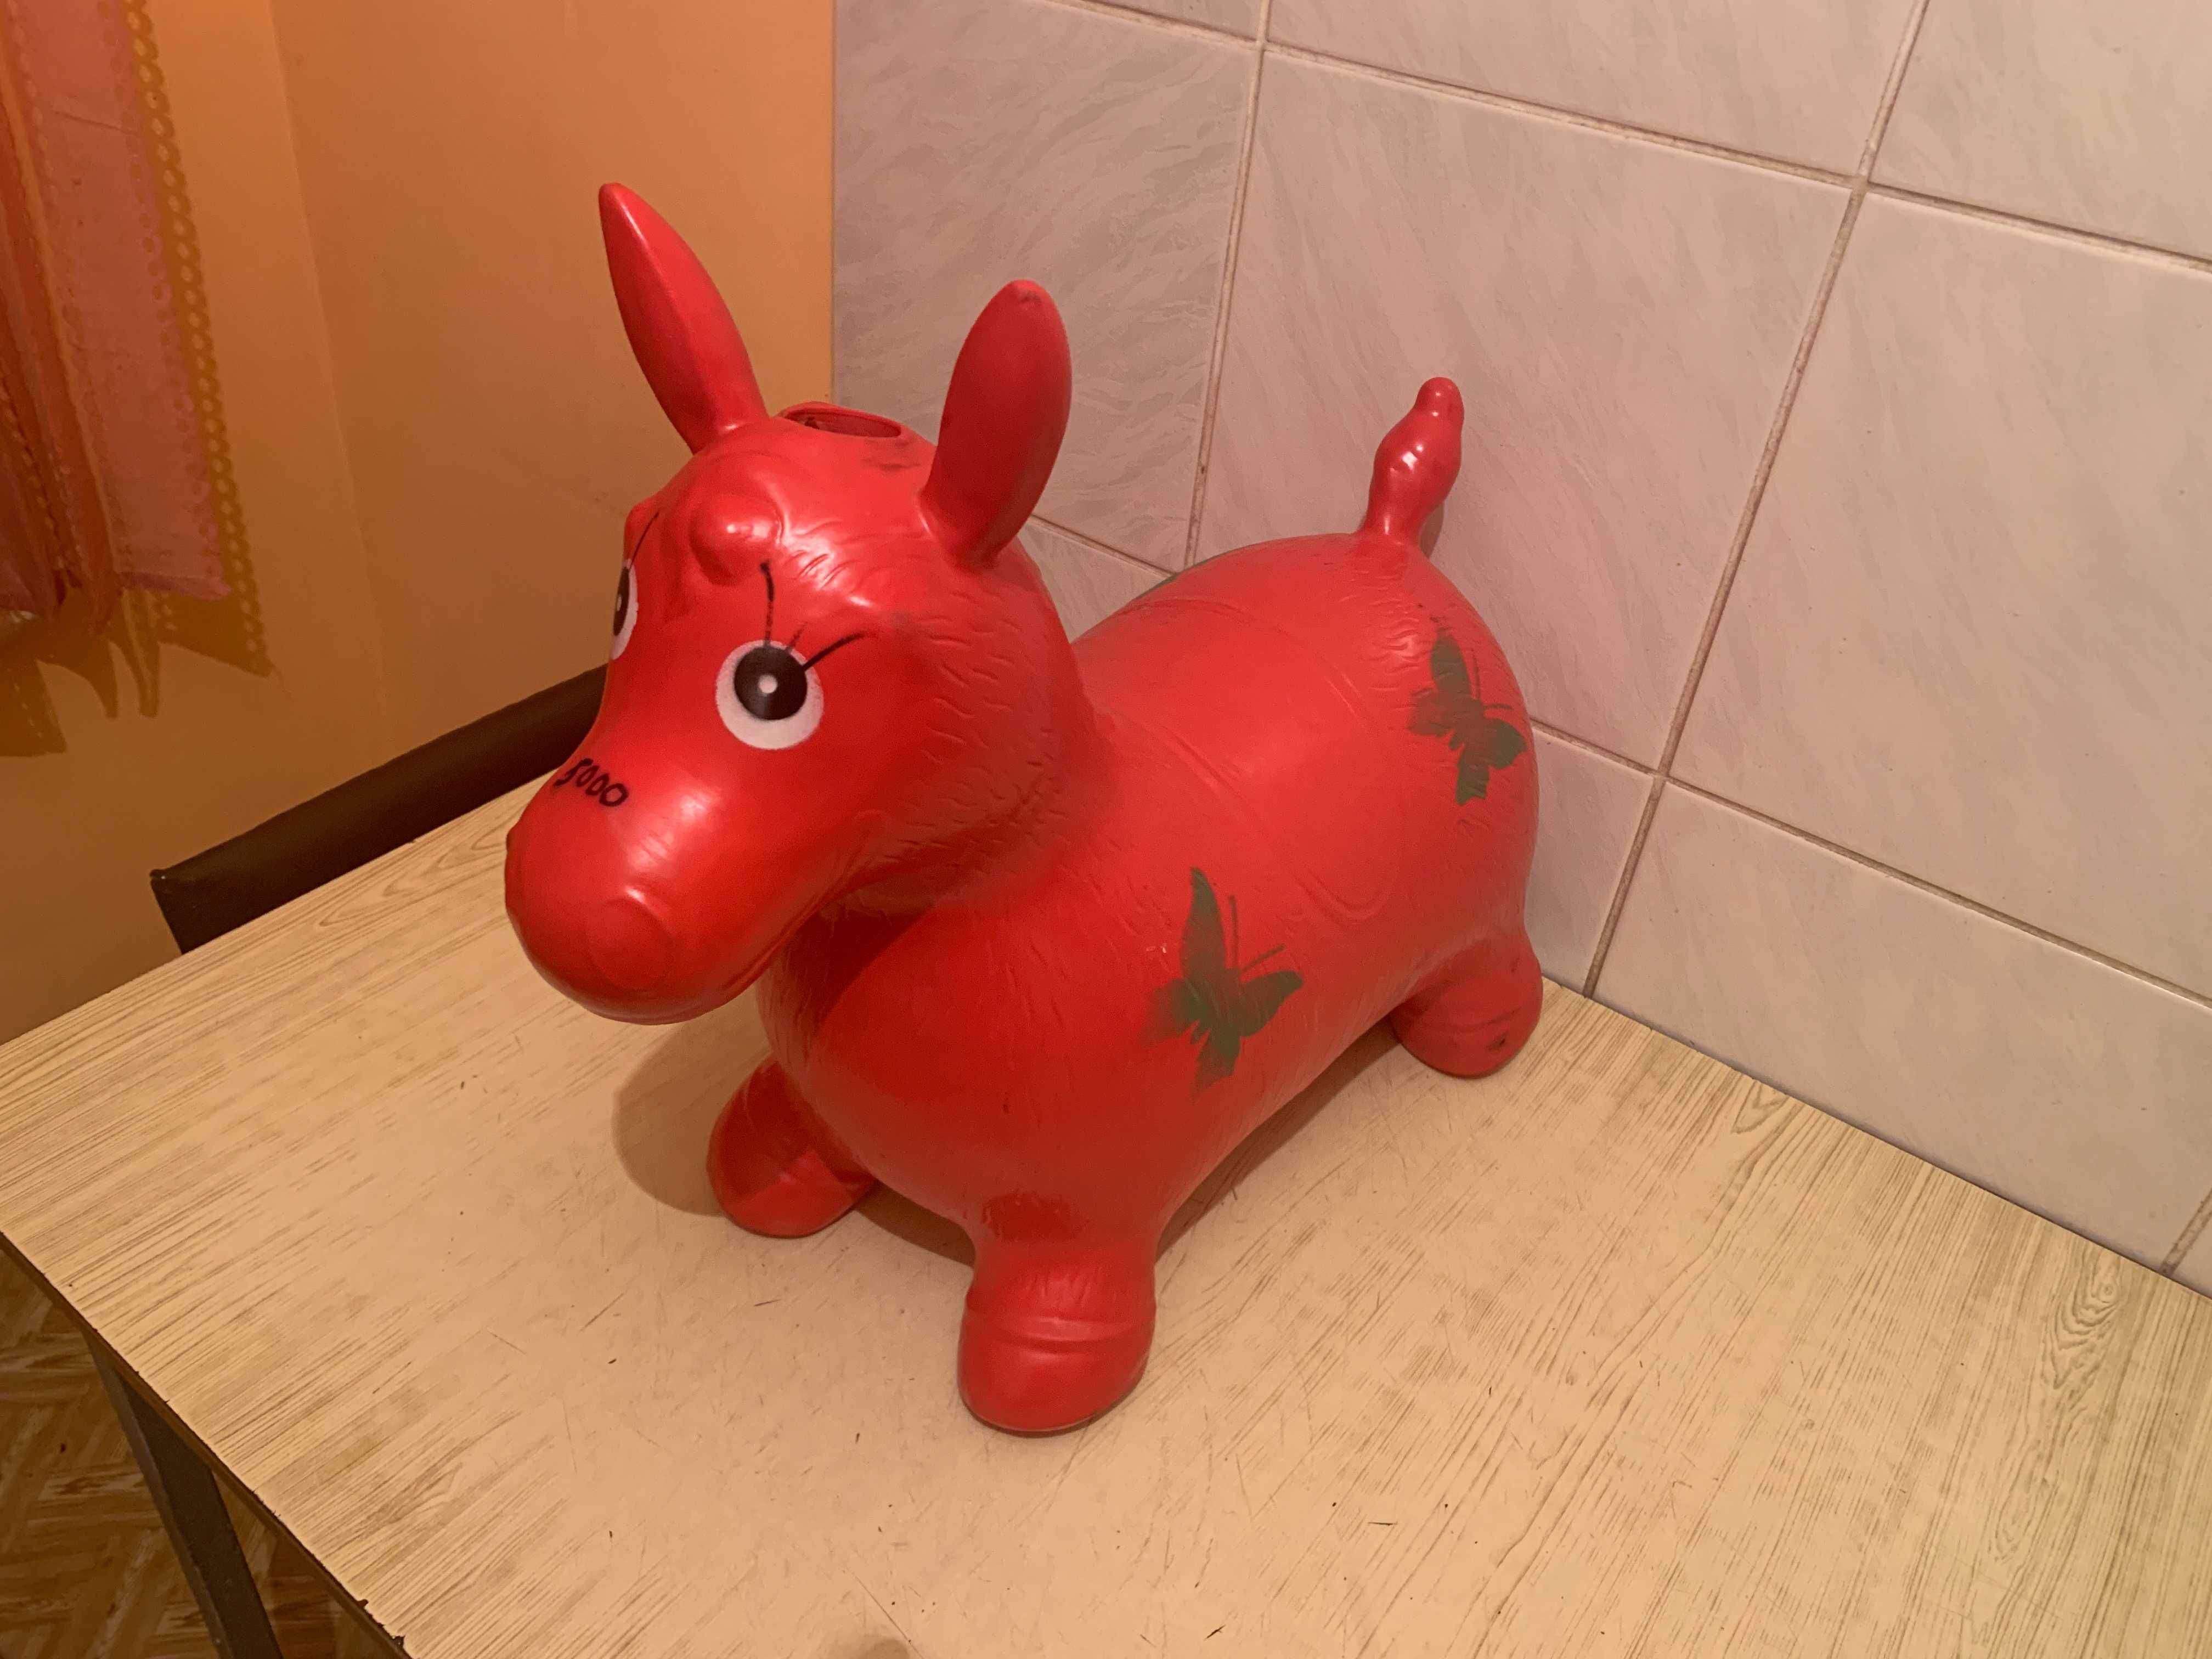 Продам игрушку резиновую надувную "Ослик" красного цвета (КНР)